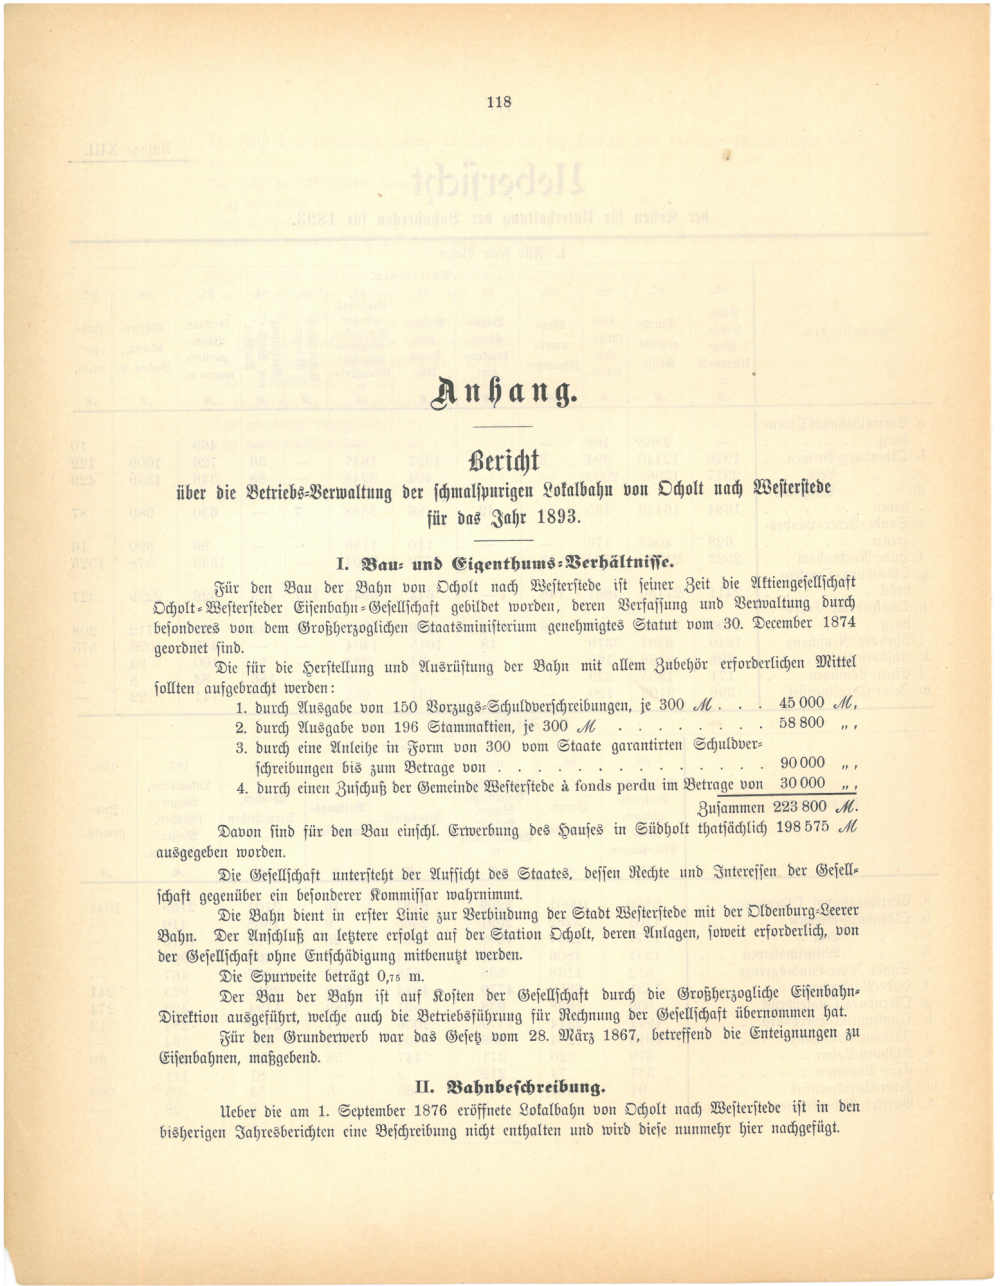 1893 - Jahresbericht, Bericht über die schmalspurige Lokalbahn von Ocholt nach Westerstede